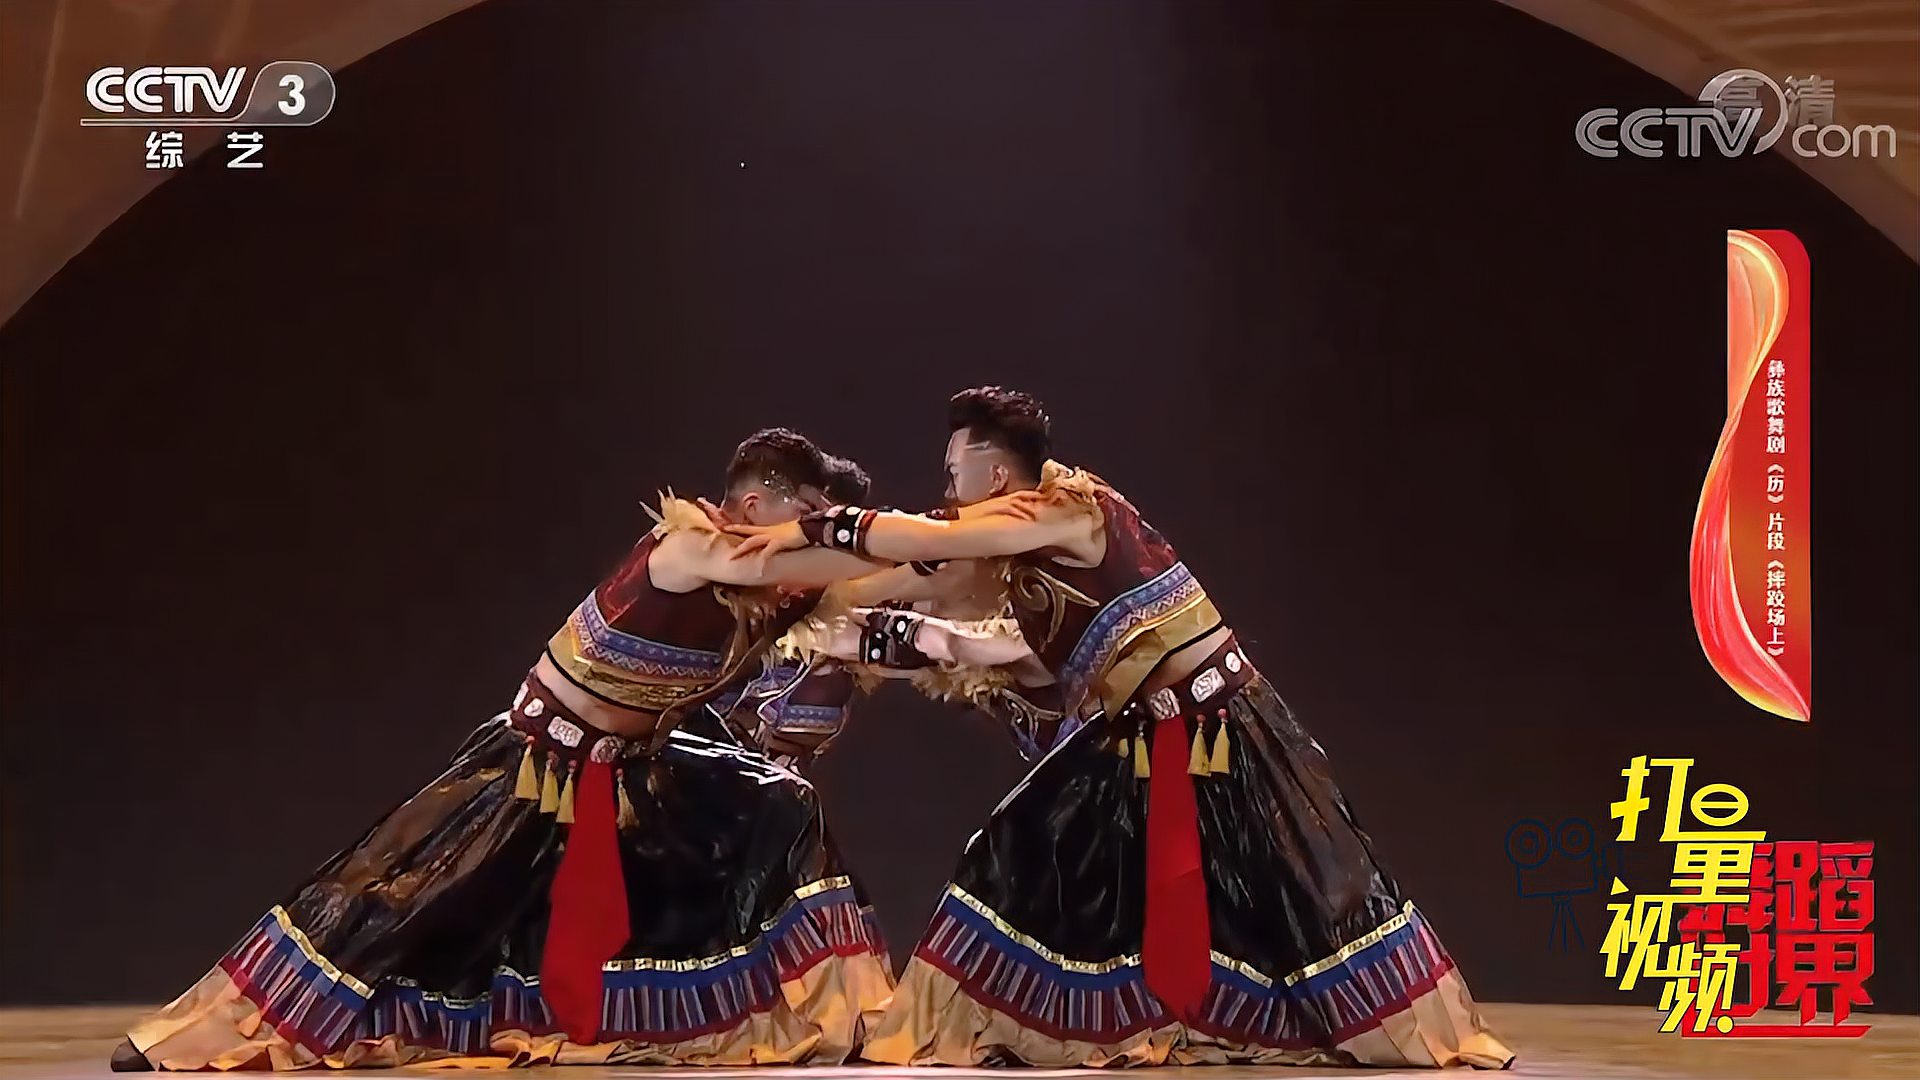 彝族歌舞剧《摔跤场上》动感十足,忍不住跟着一起舞动丨舞蹈世界